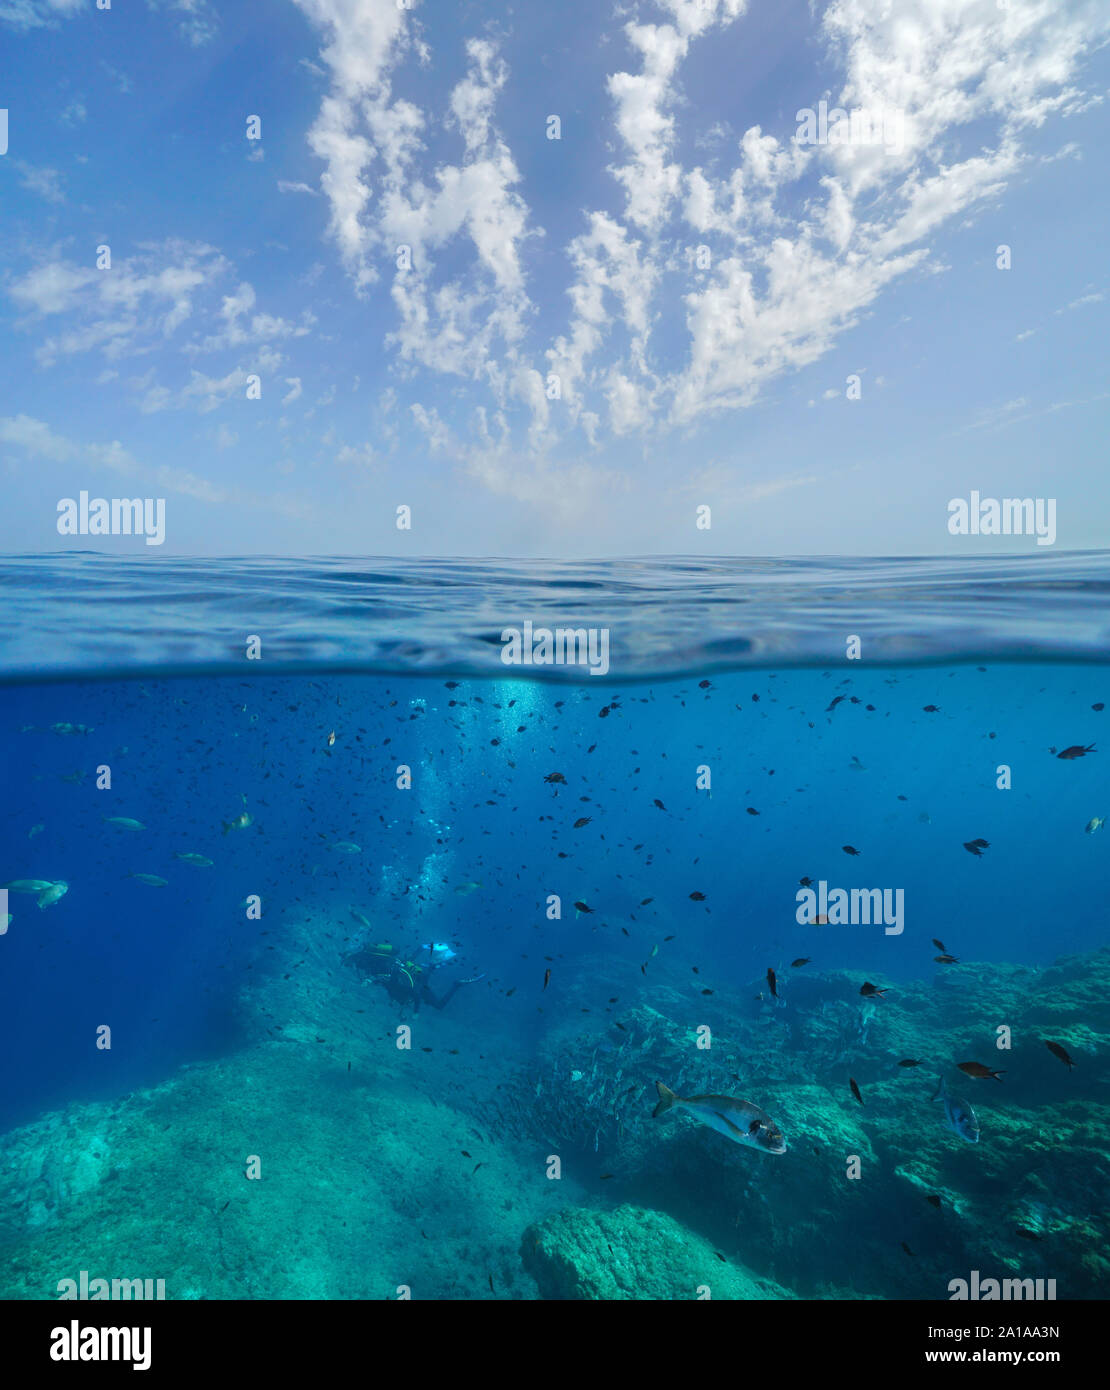 Marins de Méditerranée, de nombreux poissons de nombreux plongeurs sous l'eau et ciel bleu avec des nuages, vue fractionnée sur et sous la surface de l'eau, France Banque D'Images